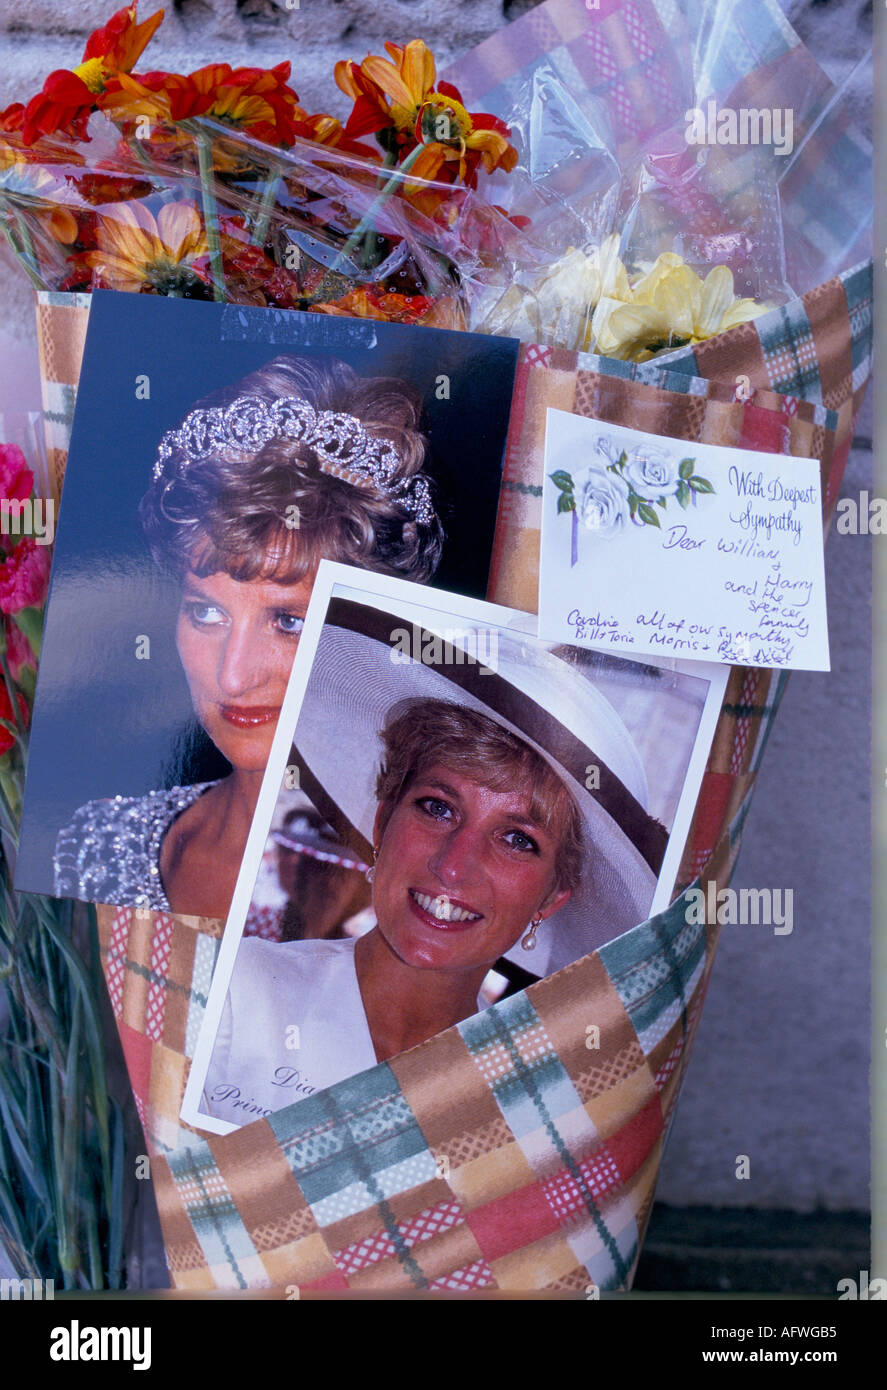 La princesse Diana décès photographies des fleurs floral comme tribute memorial Septembre 1997 'Kensington Palace' London UK 1990 HOMER SYKES Banque D'Images